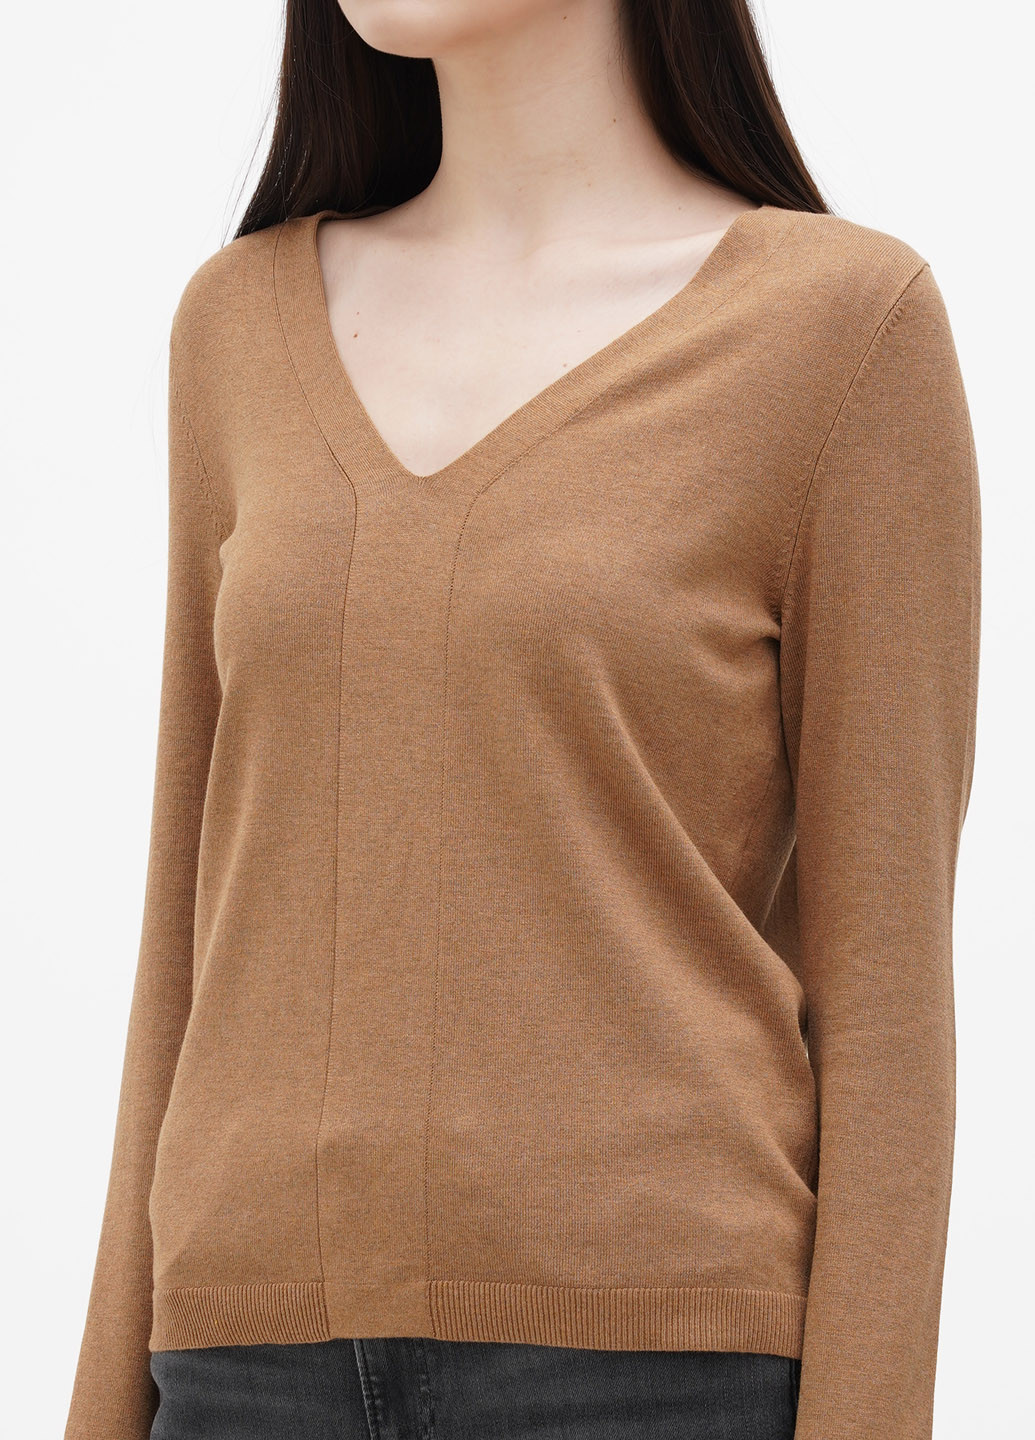 Светло-коричневый демисезонный пуловер пуловер S.Oliver